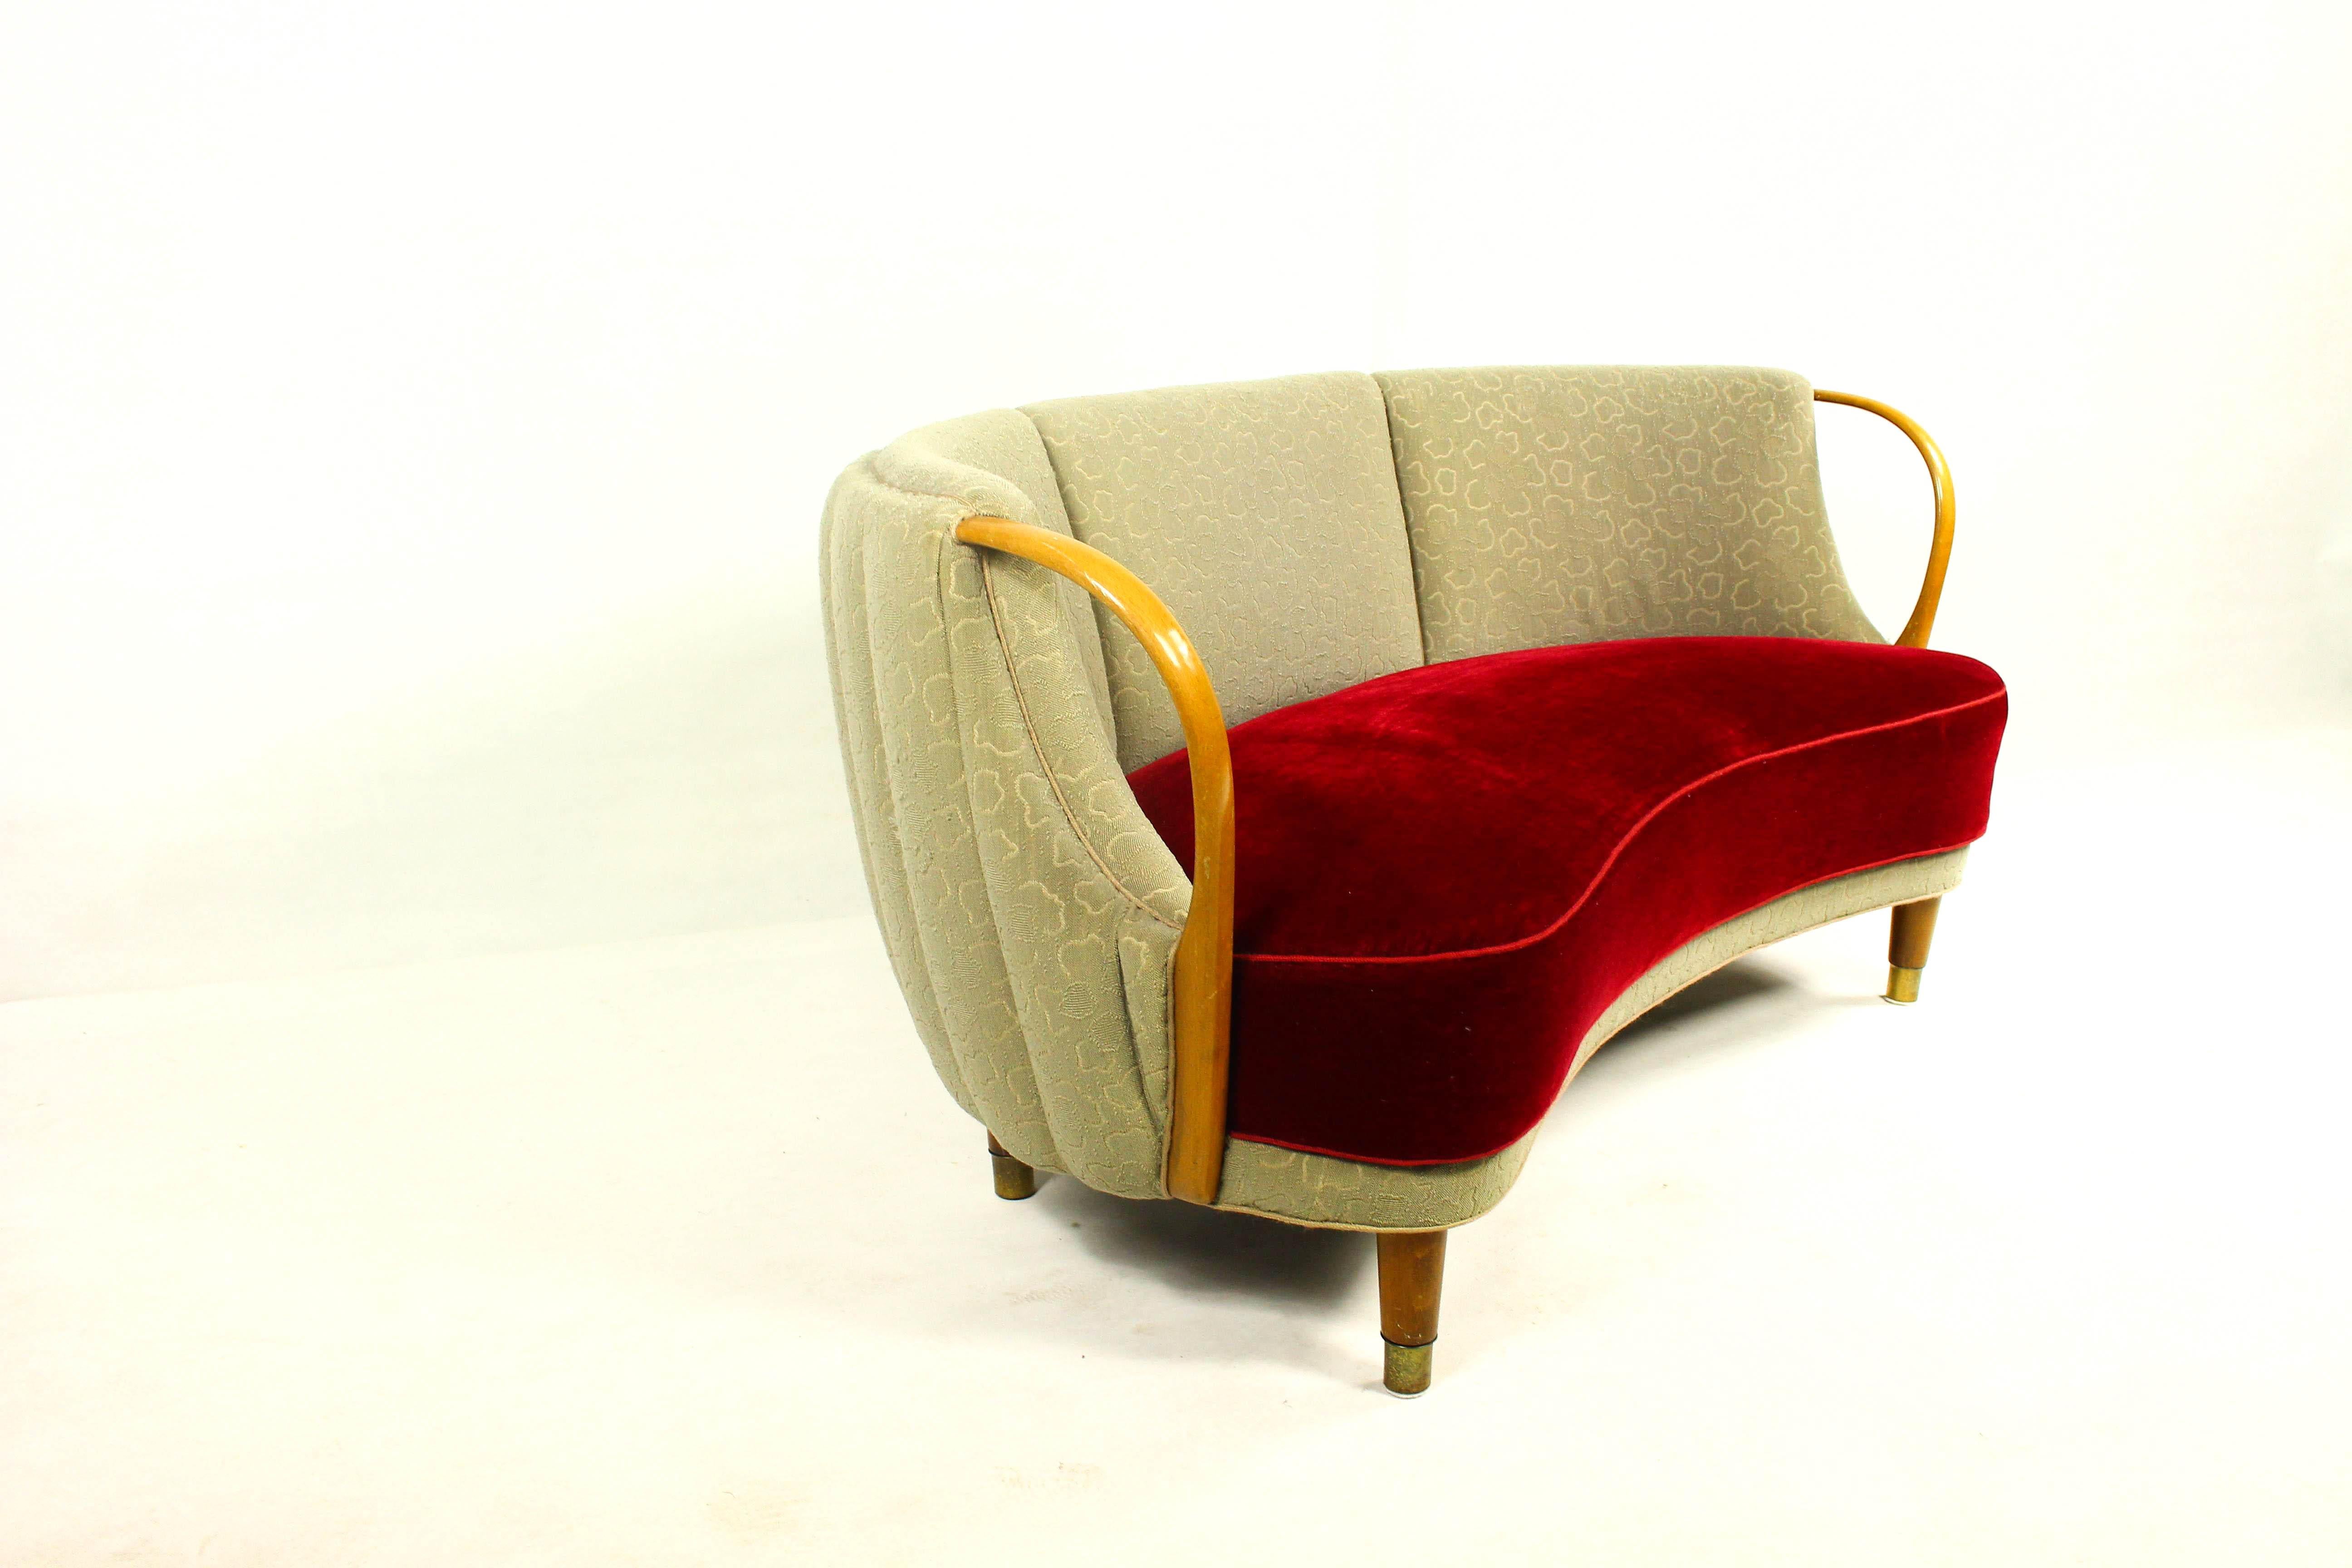 Causeuse ou canapé unique en forme de courbe ou de banane avec accoudoirs ouverts, conçu et fabriqué comme modèle 96 par N.A. Jørgensens Møbelfabrik en 1954/55.

N.A. Jørgensen est plus connu sous le nom de Bramin Mobler, un nom qu'ils ont adopté